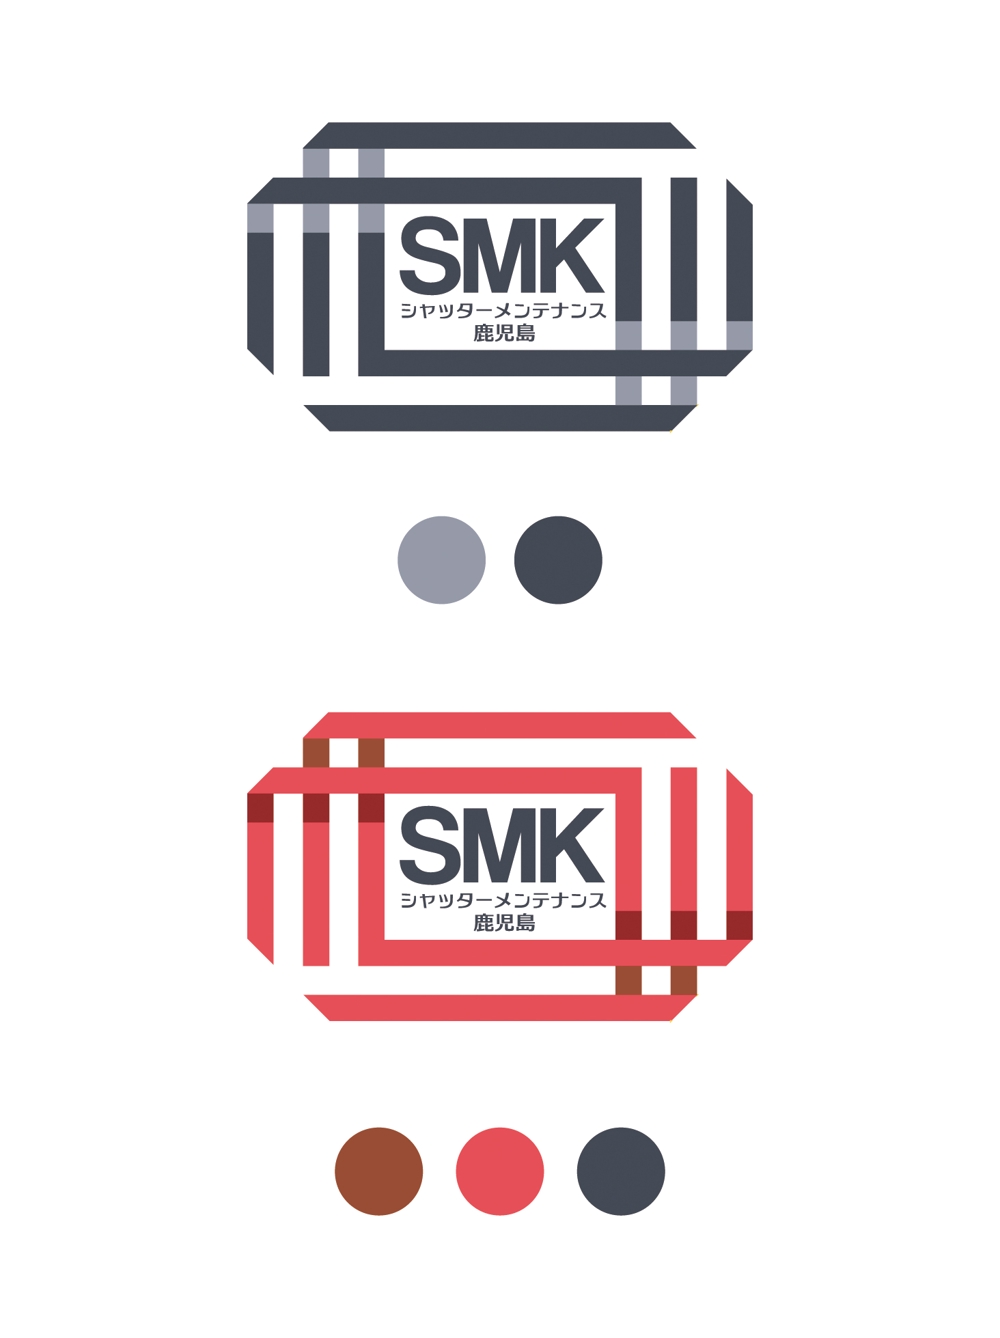 合同会社シャッターメンテナンス鹿児島　「SMK」のロゴ